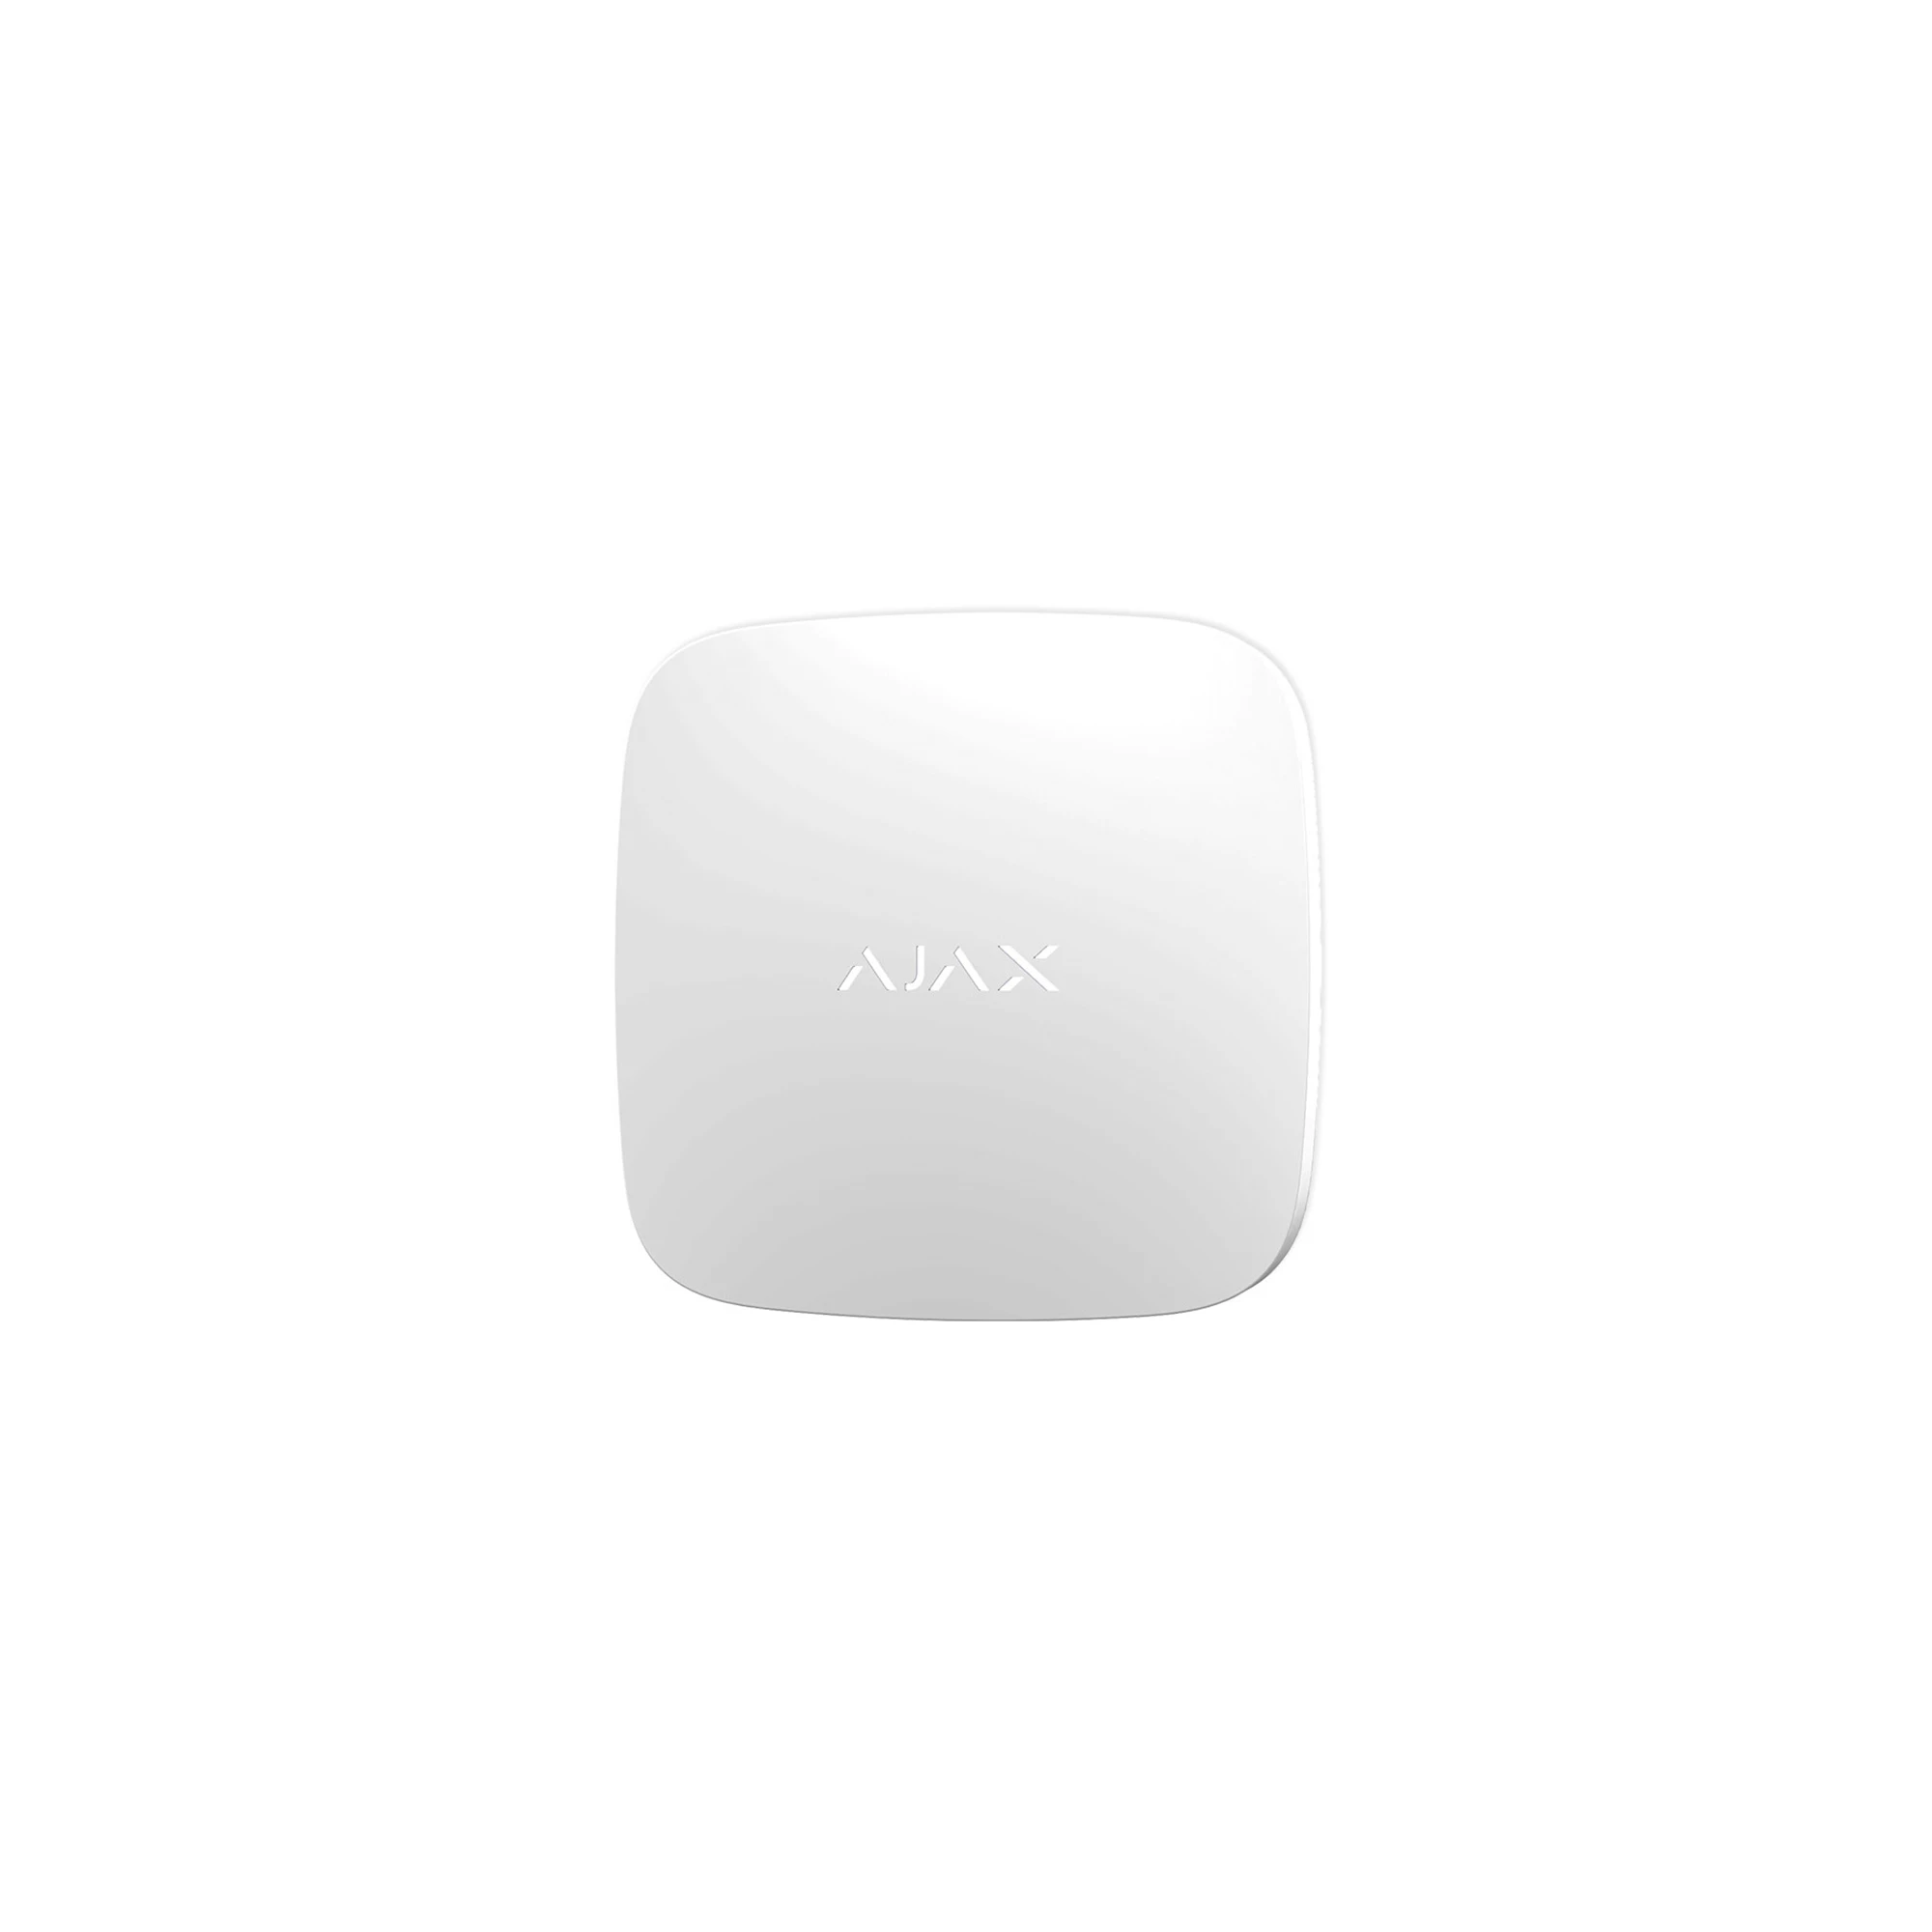 Ajax LeaksProtect White - бездротовий датчик протікання